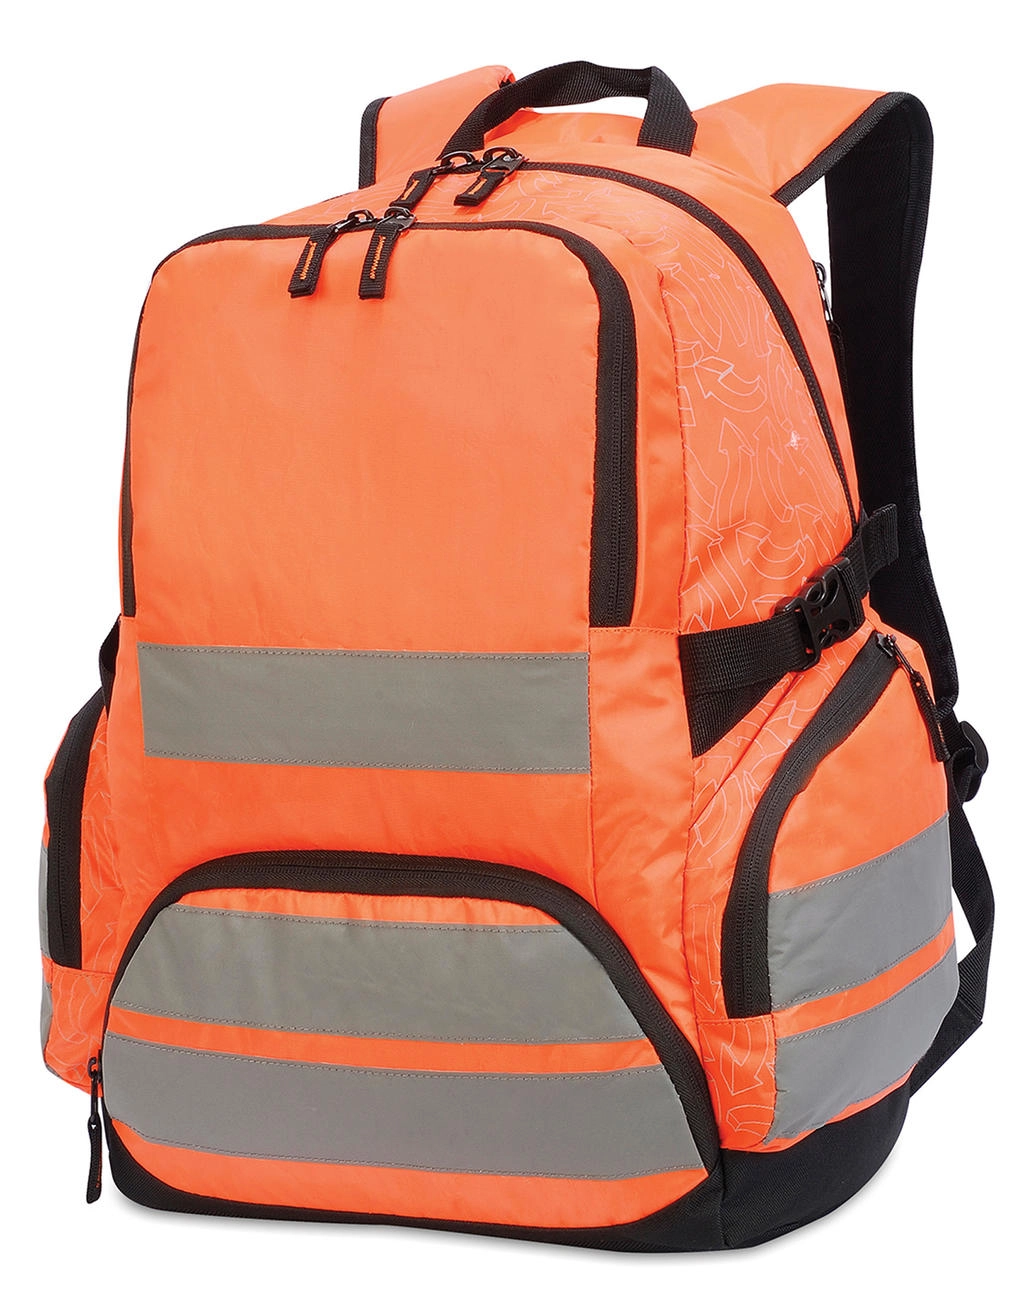 London Hi-Vis Backpack  zum Besticken und Bedrucken in der Farbe Hi-Vis Orange mit Ihren Logo, Schriftzug oder Motiv.